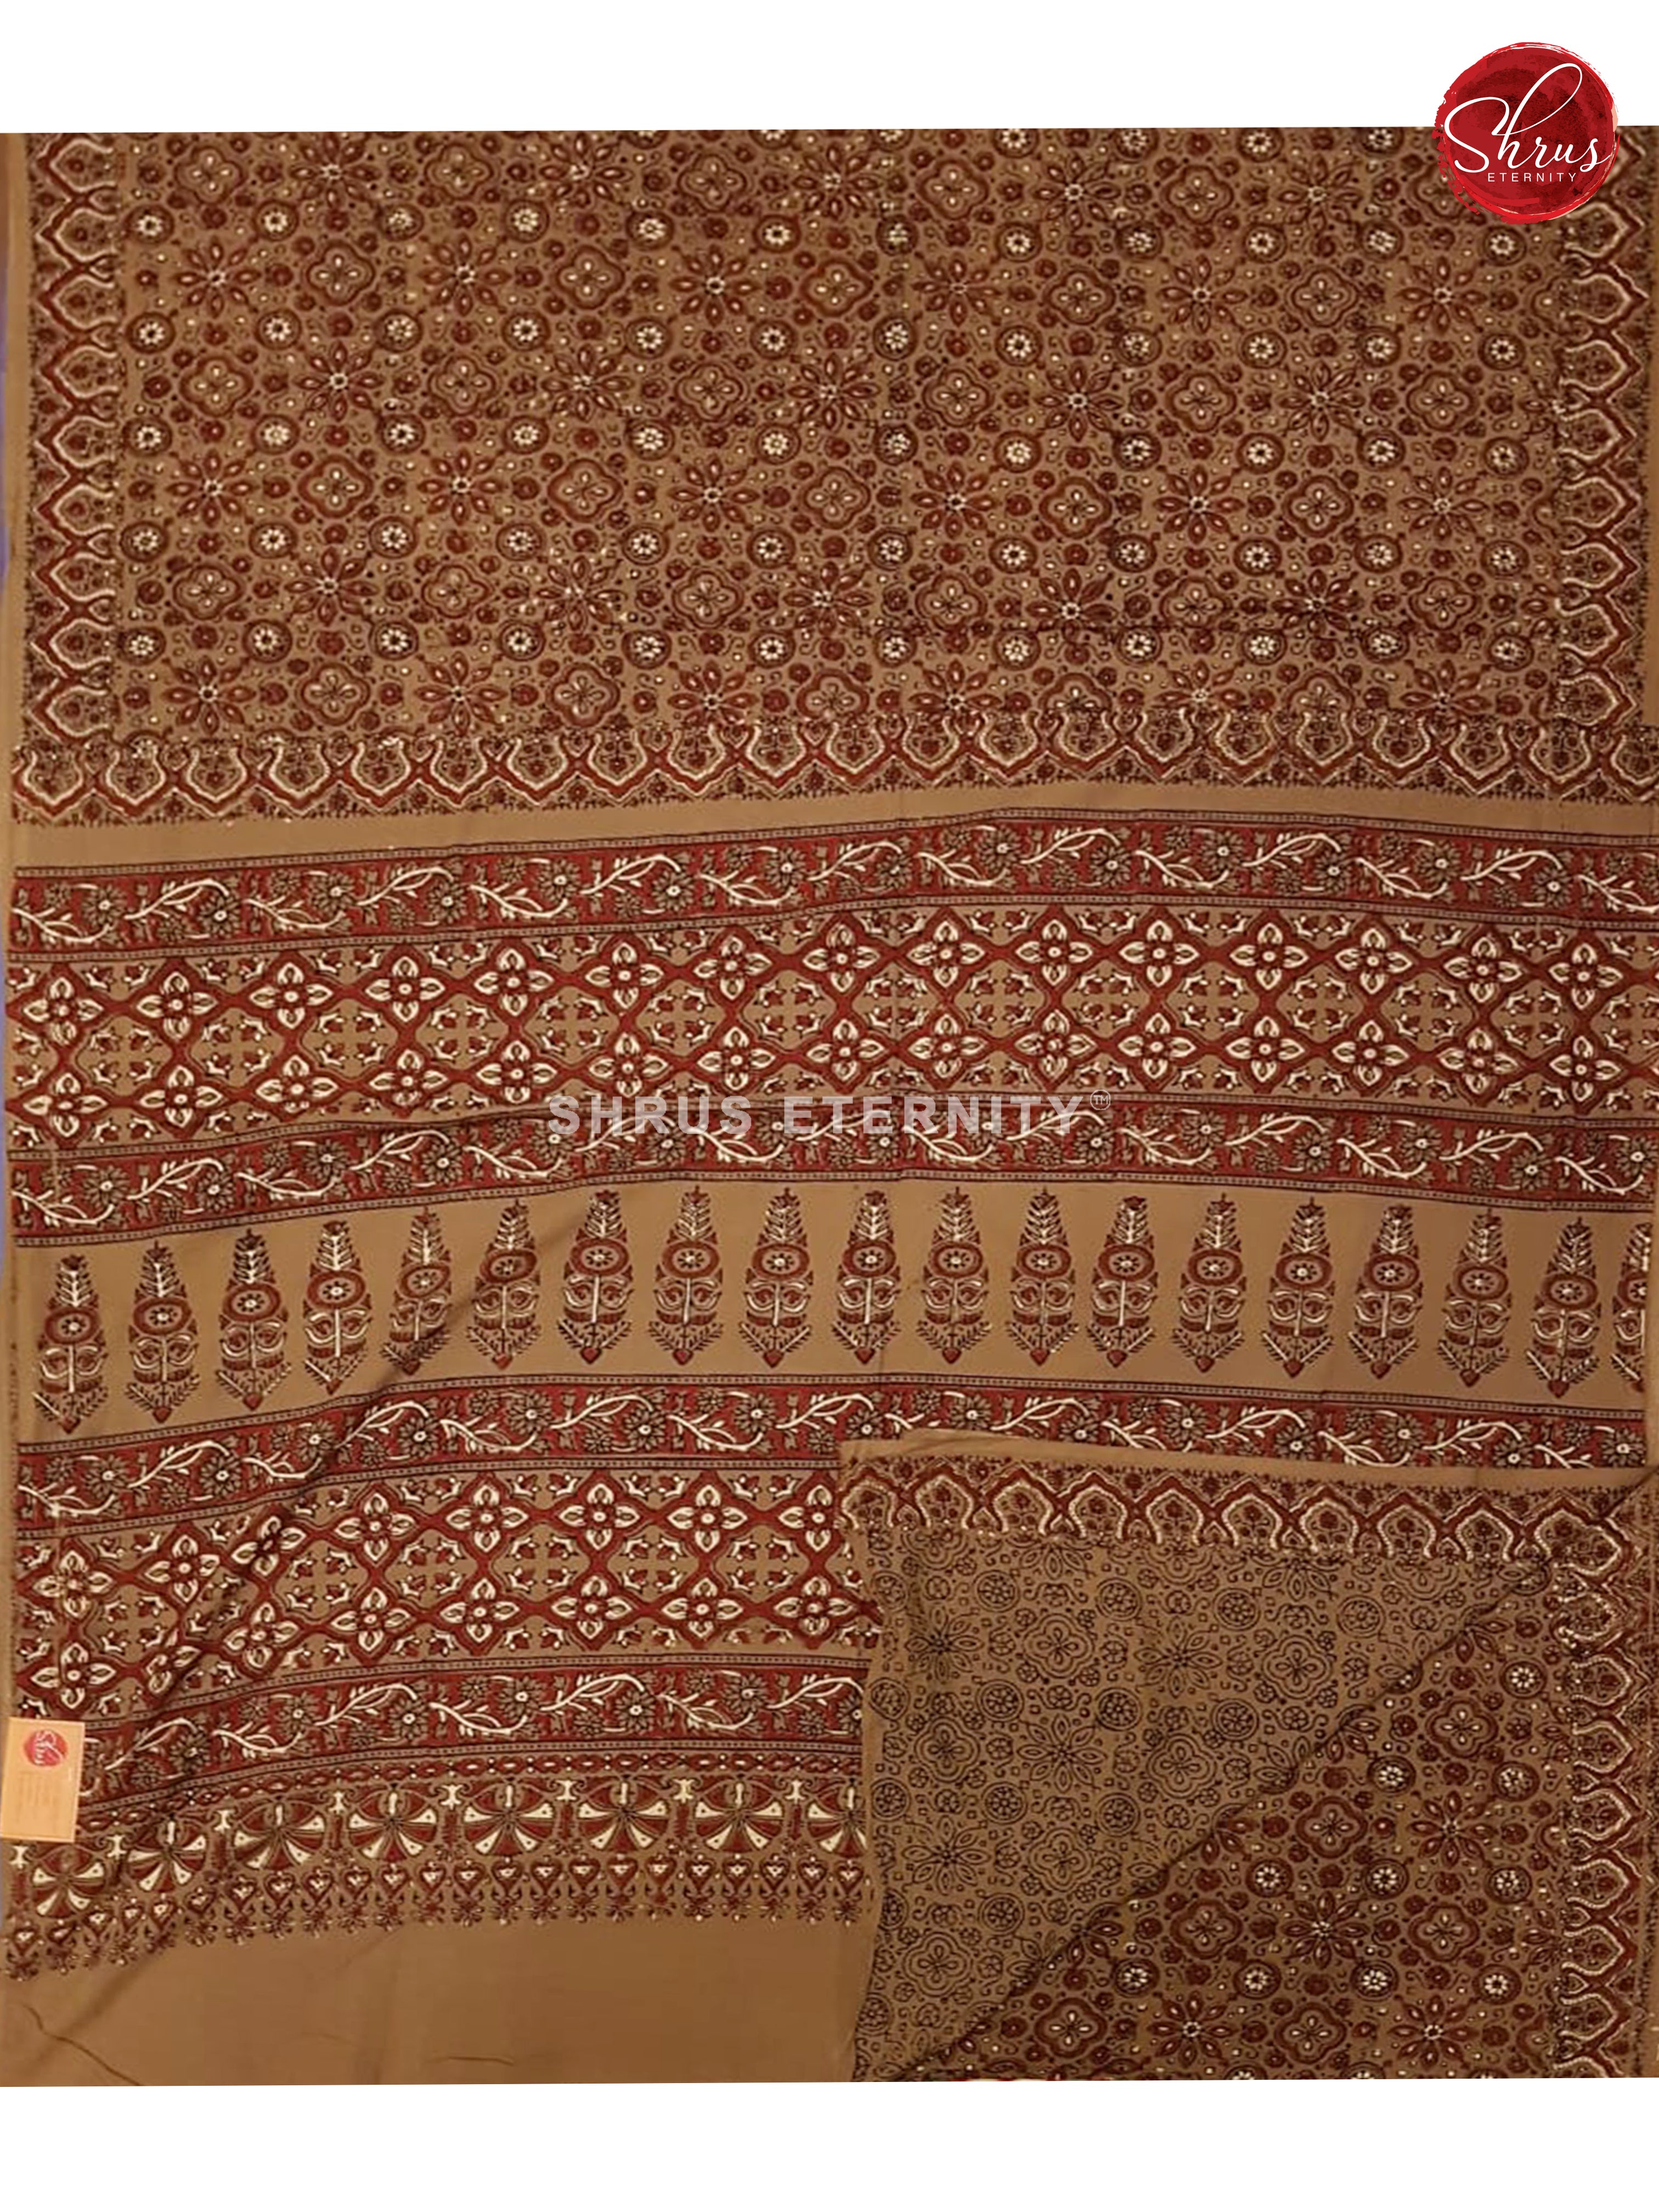 Peanut(Single Tone) -  Ajrakh Cotton - Shop on ShrusEternity.com